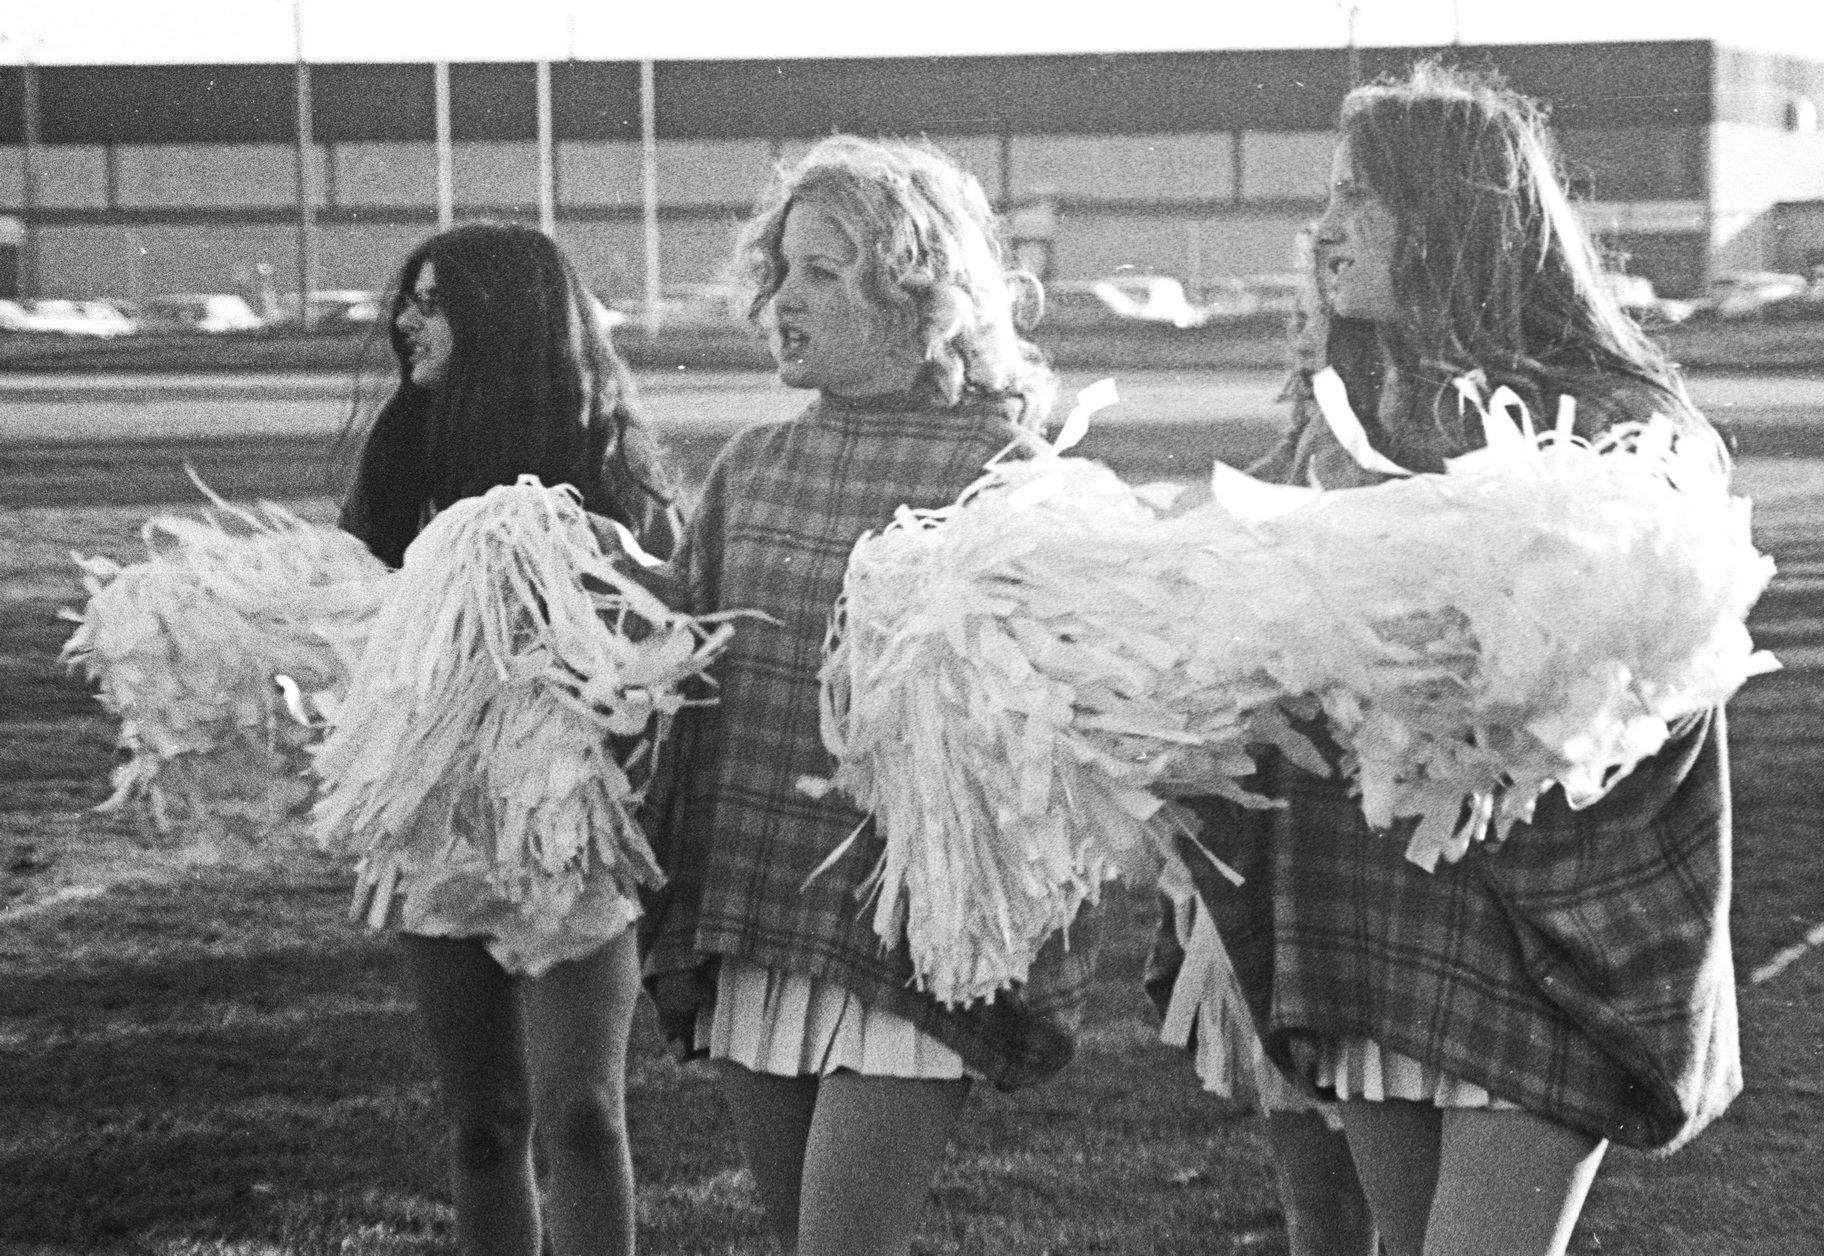 Brantford Football Game Cheerleeders 1.jpg